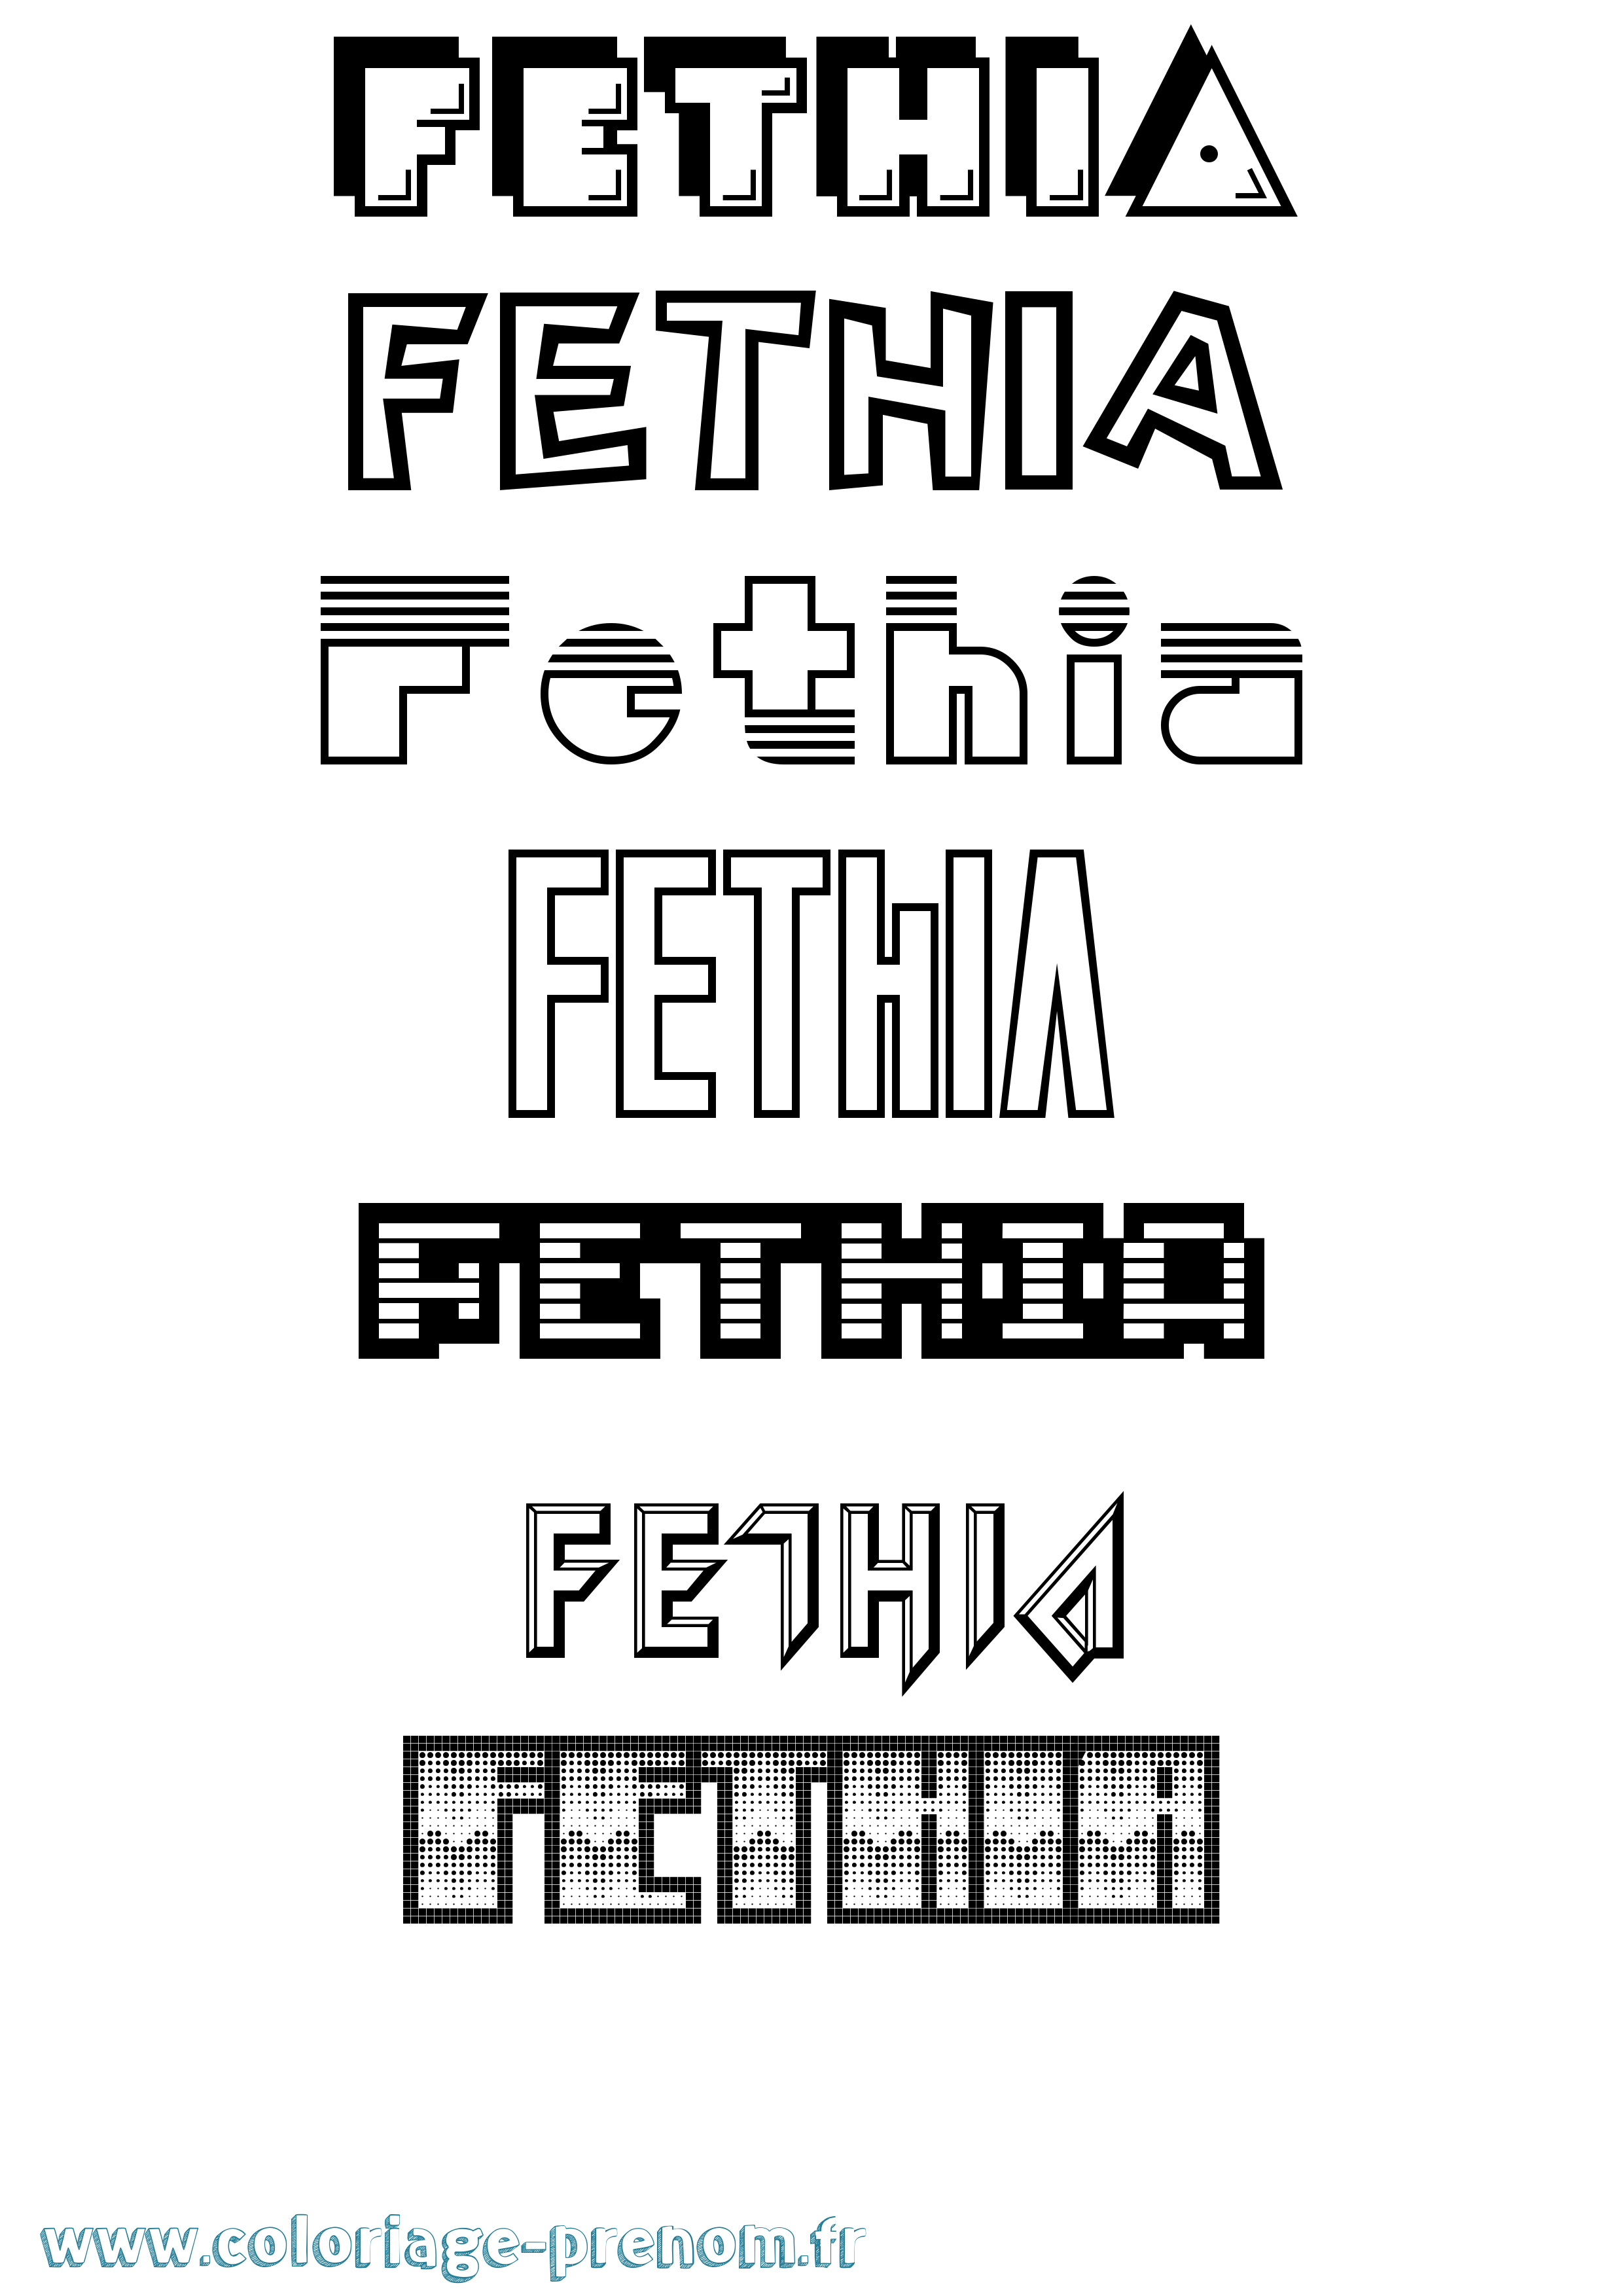 Coloriage prénom Fethia Jeux Vidéos